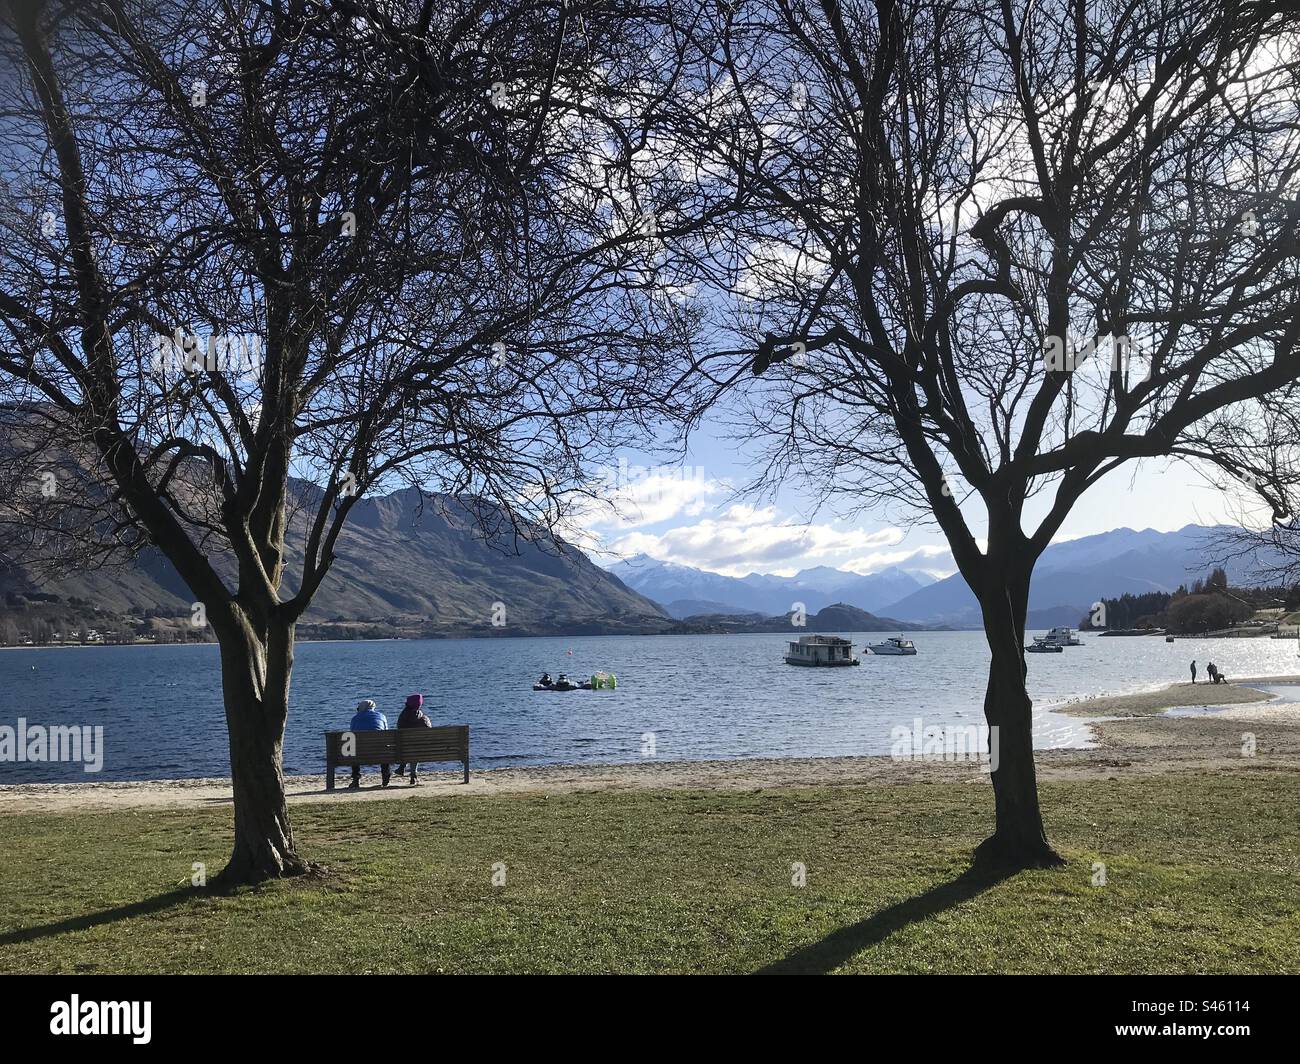 New Zealand / Aotearoa - Wanaka on a warm winters day Stock Photo